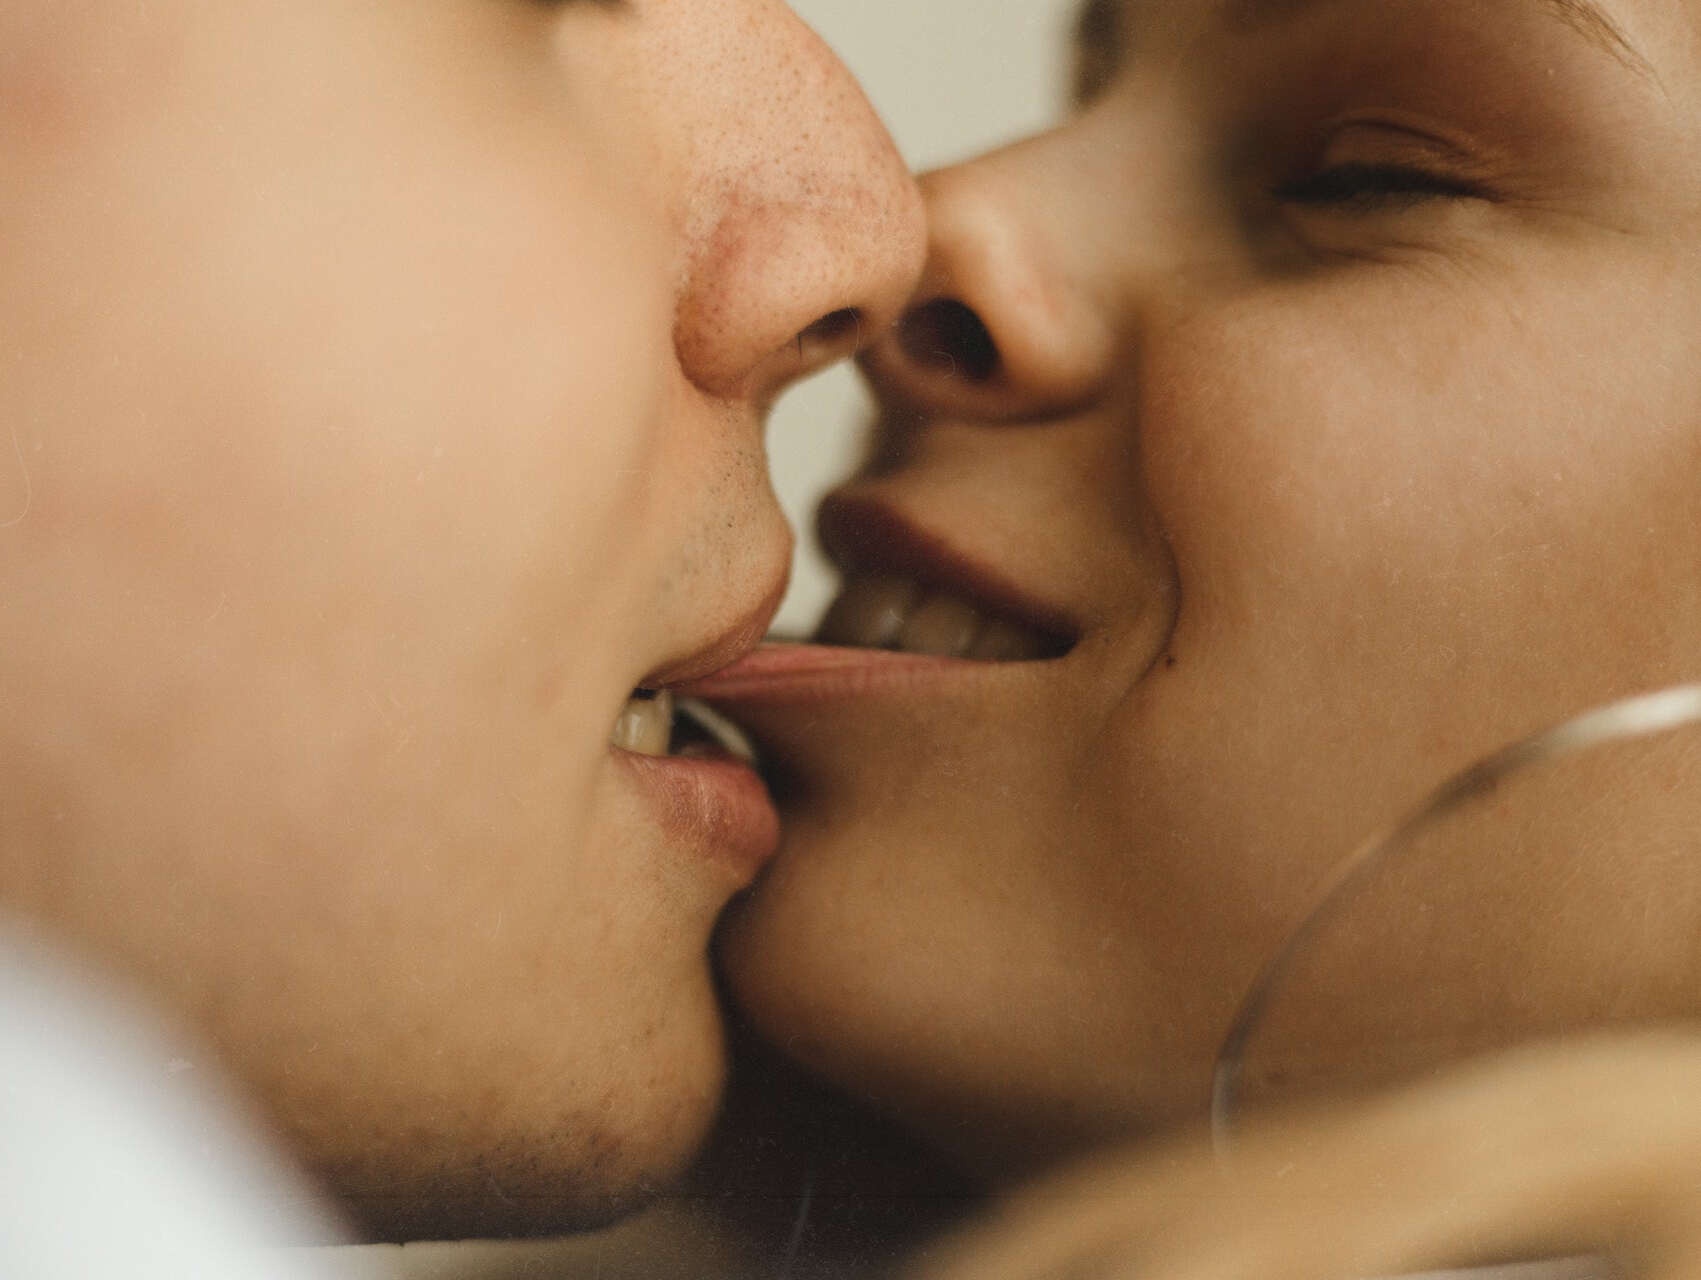 kiss, ciuman, french, neck, romantis, seks, foreplay, pasangan, cinta, gairah, cara, jenis, pacaran